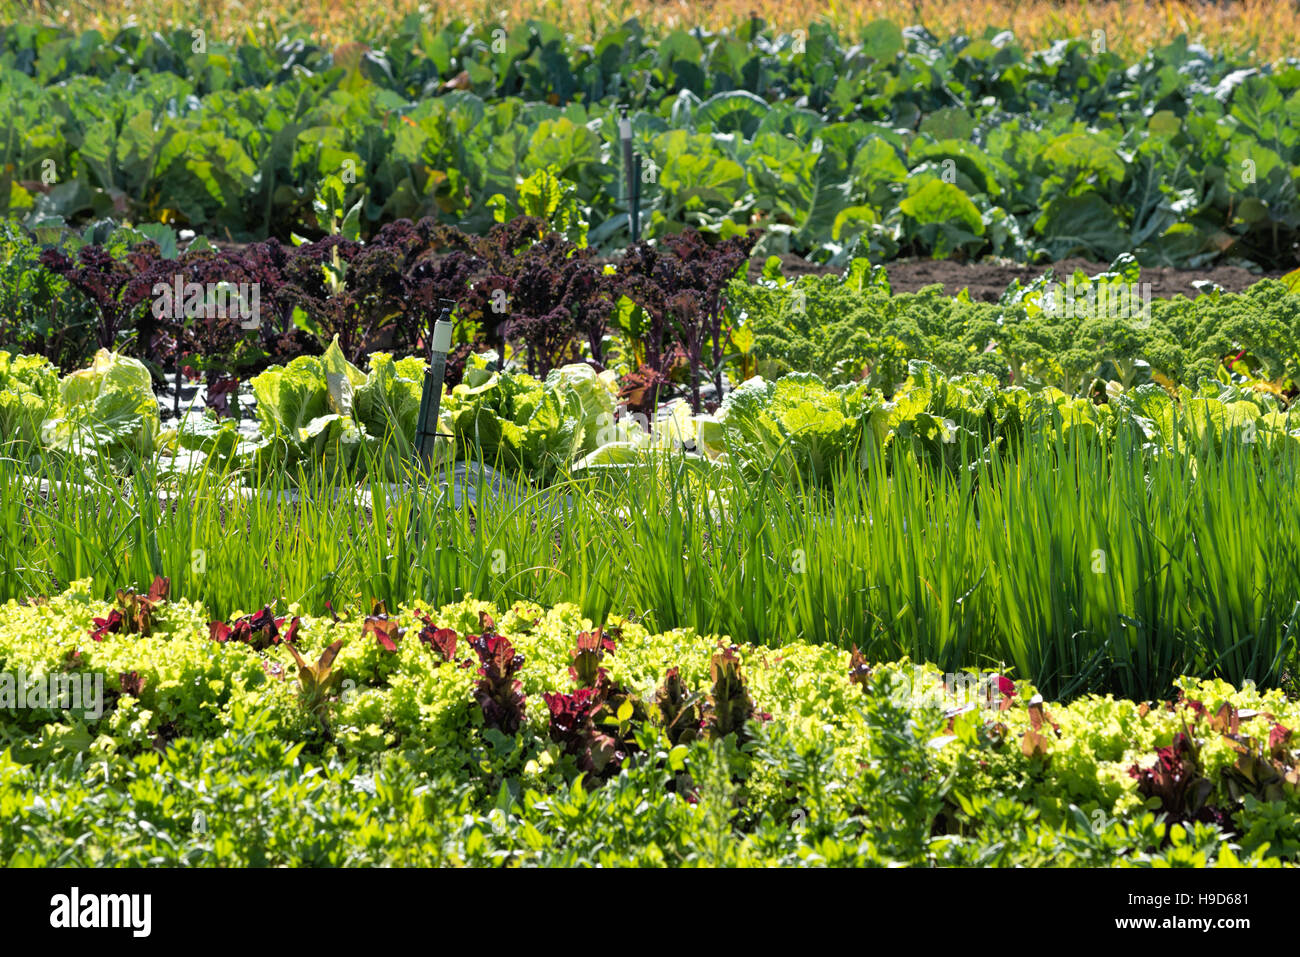 Reihen von Kopfsalat, Grünkohl, Frühlingszwiebeln und Kohl wächst in einem Garten in Oregon Wallowa Valley. Stockfoto